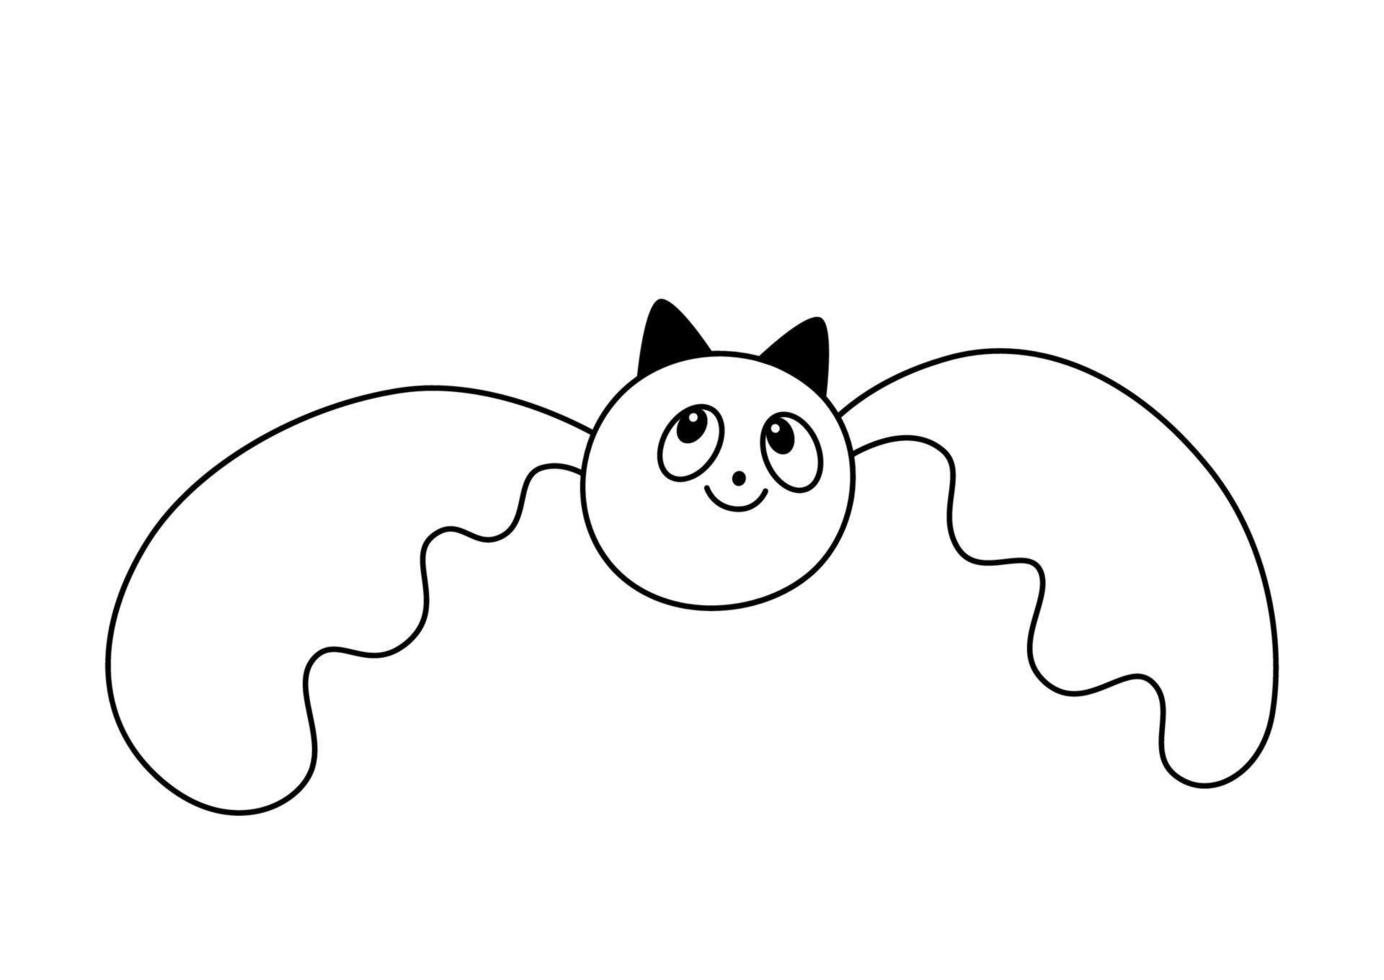 Illustration der fliegenden lächelnden süßen Fledermaus mit offenen Flügeln im Doodle-Stil Umrissskizze vektor